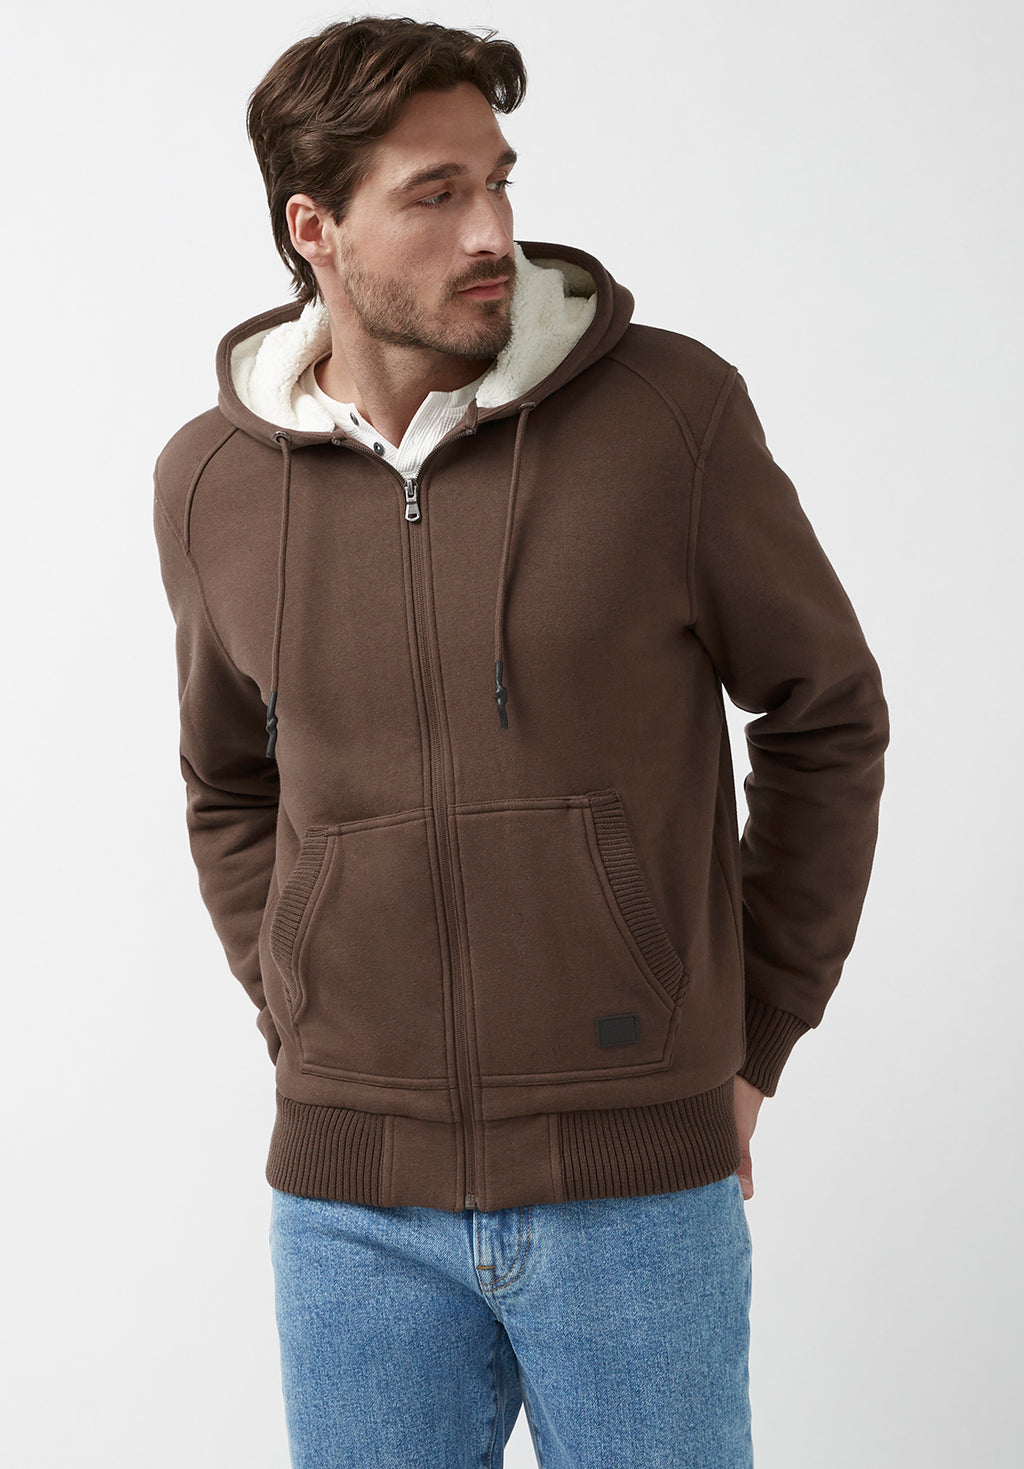 Fasox Brown Men’s Sweatshirt – Buffalo Jeans - US